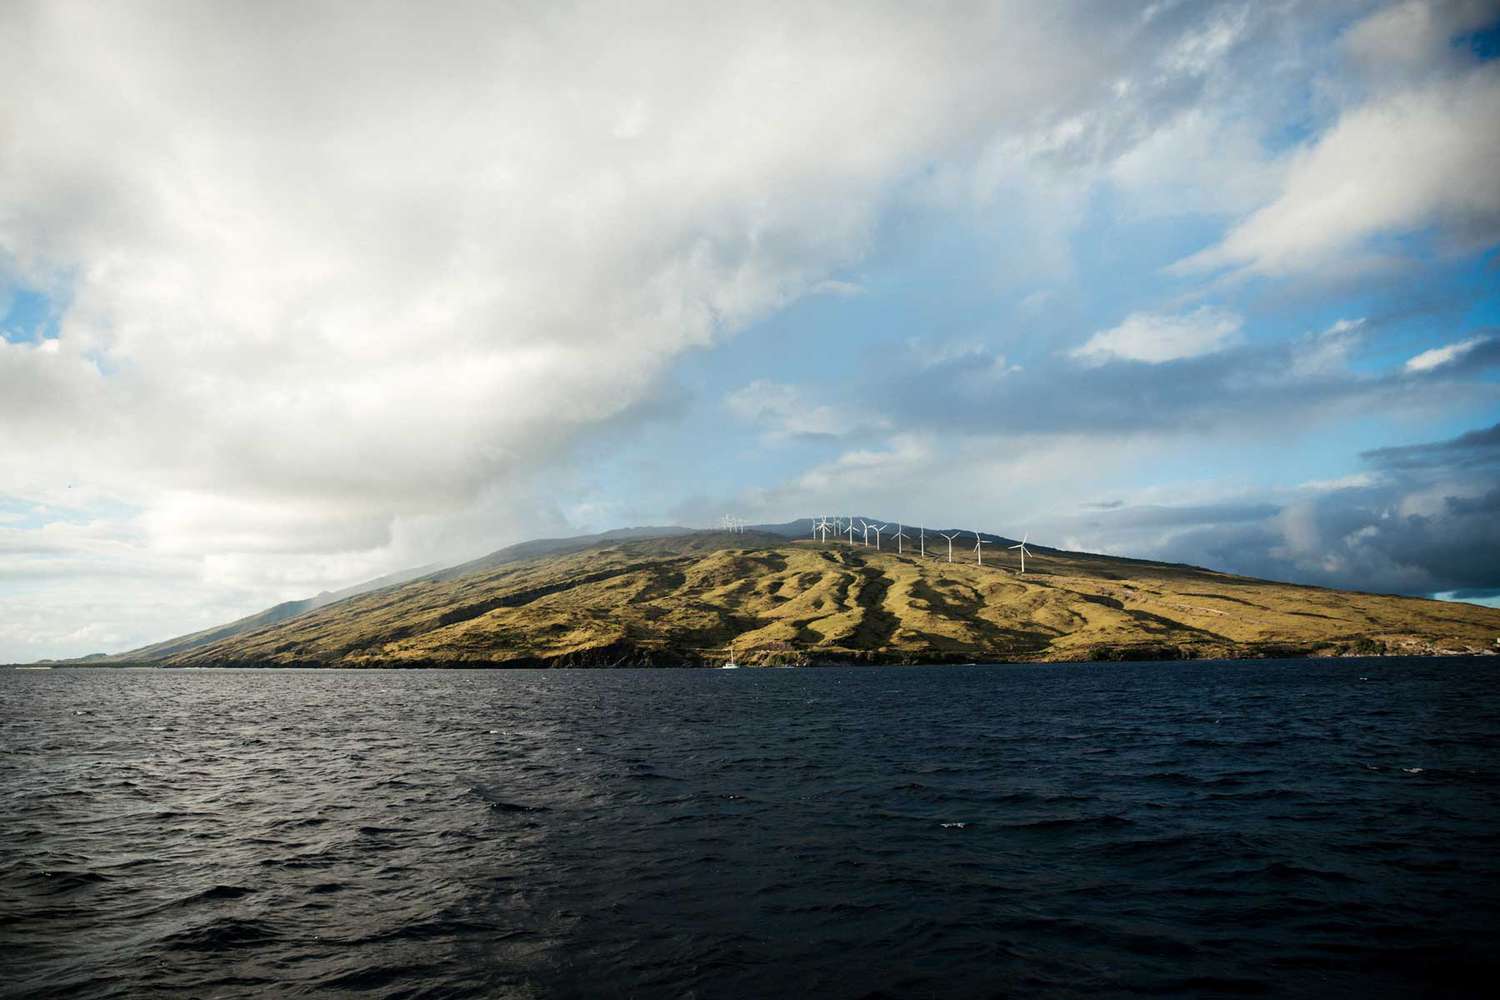 Vue des éoliennes sur l'île hawaïenne de Maui